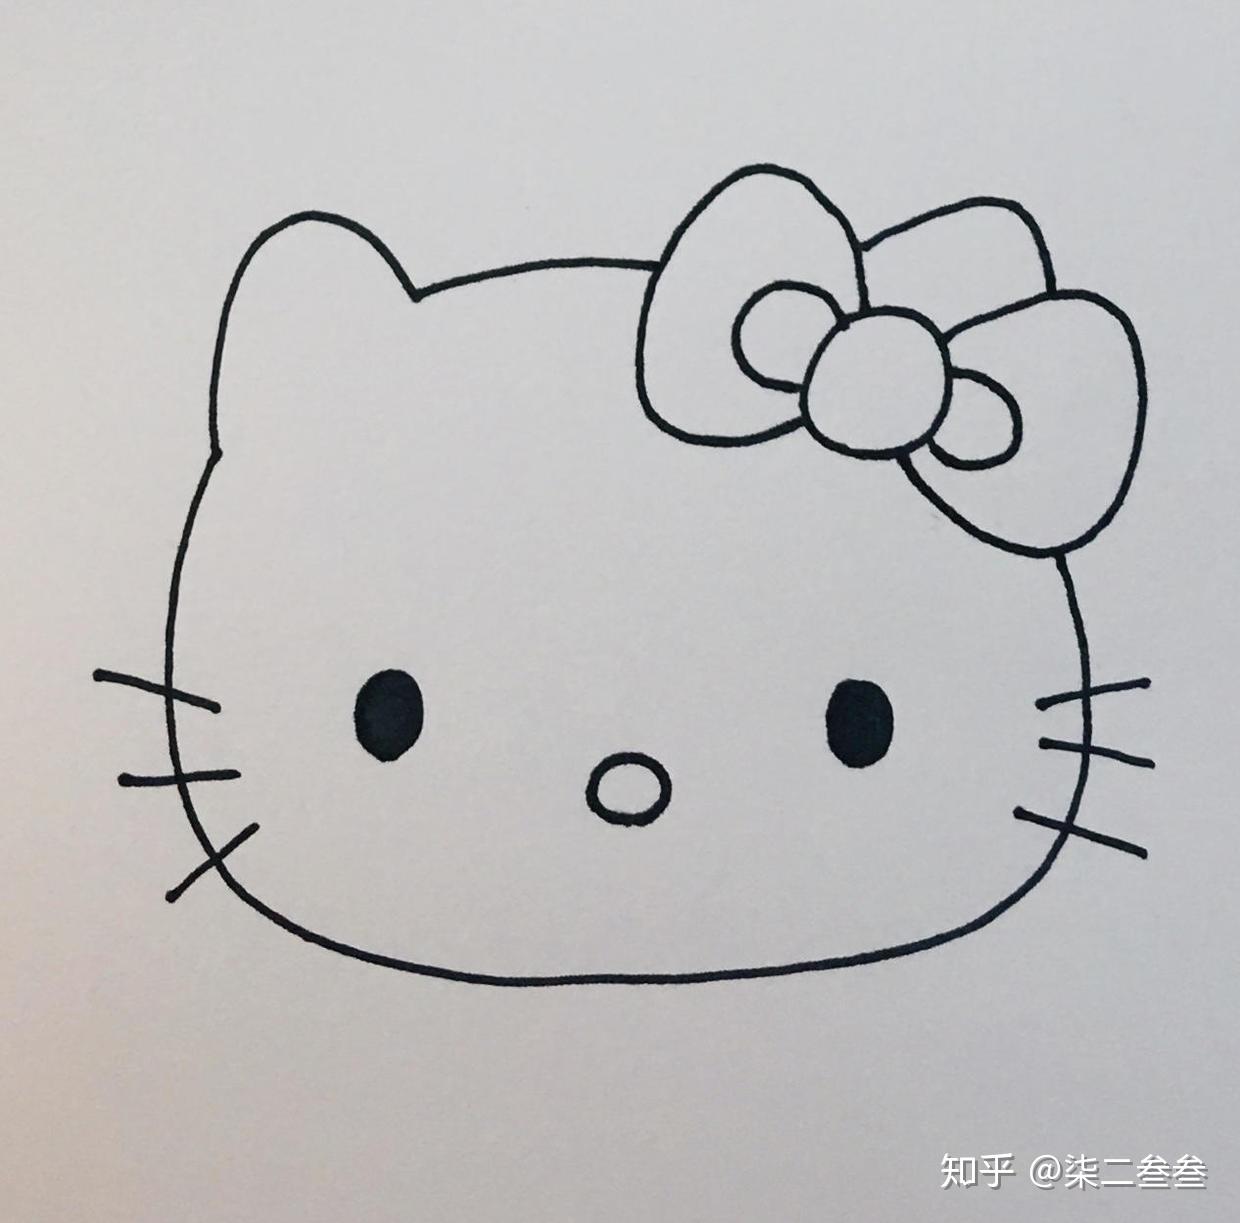 每天一張簡筆畫 _哈嘍kitty簡筆畫 - 神拓網